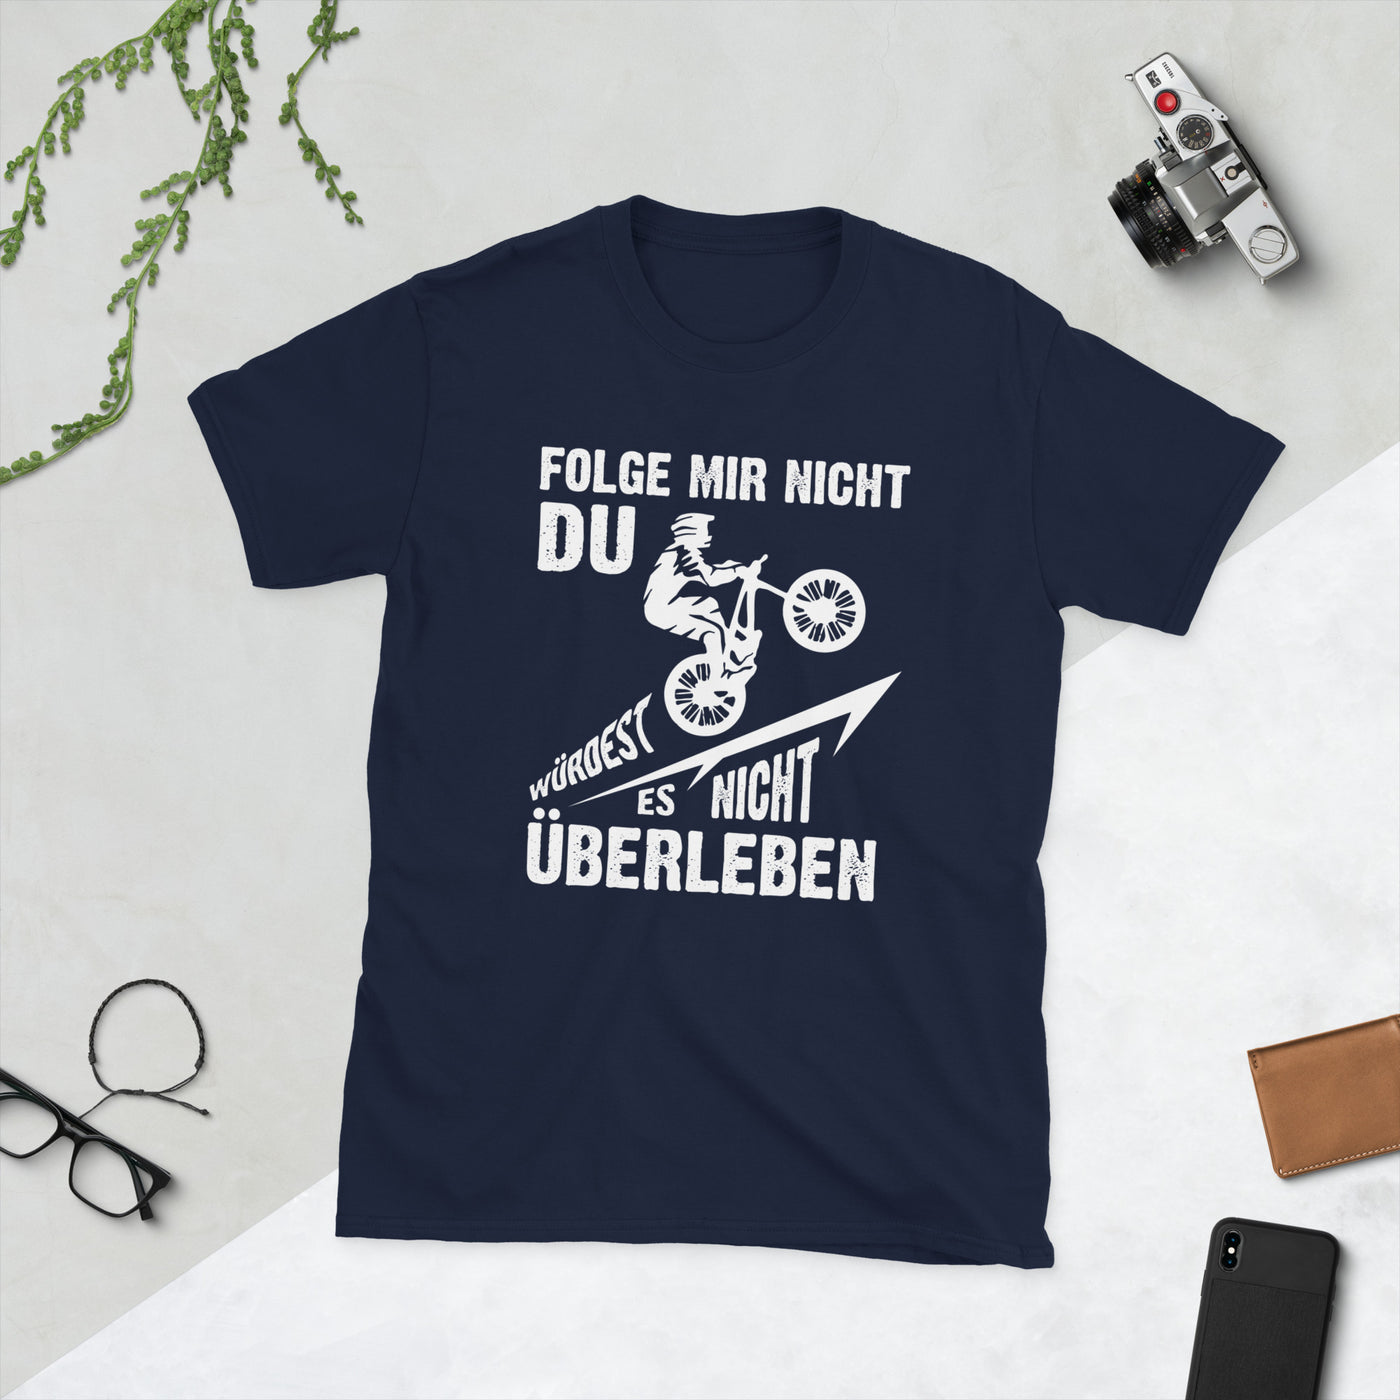 Folge Mir Nicht - (M) - T-Shirt (Unisex) Navy